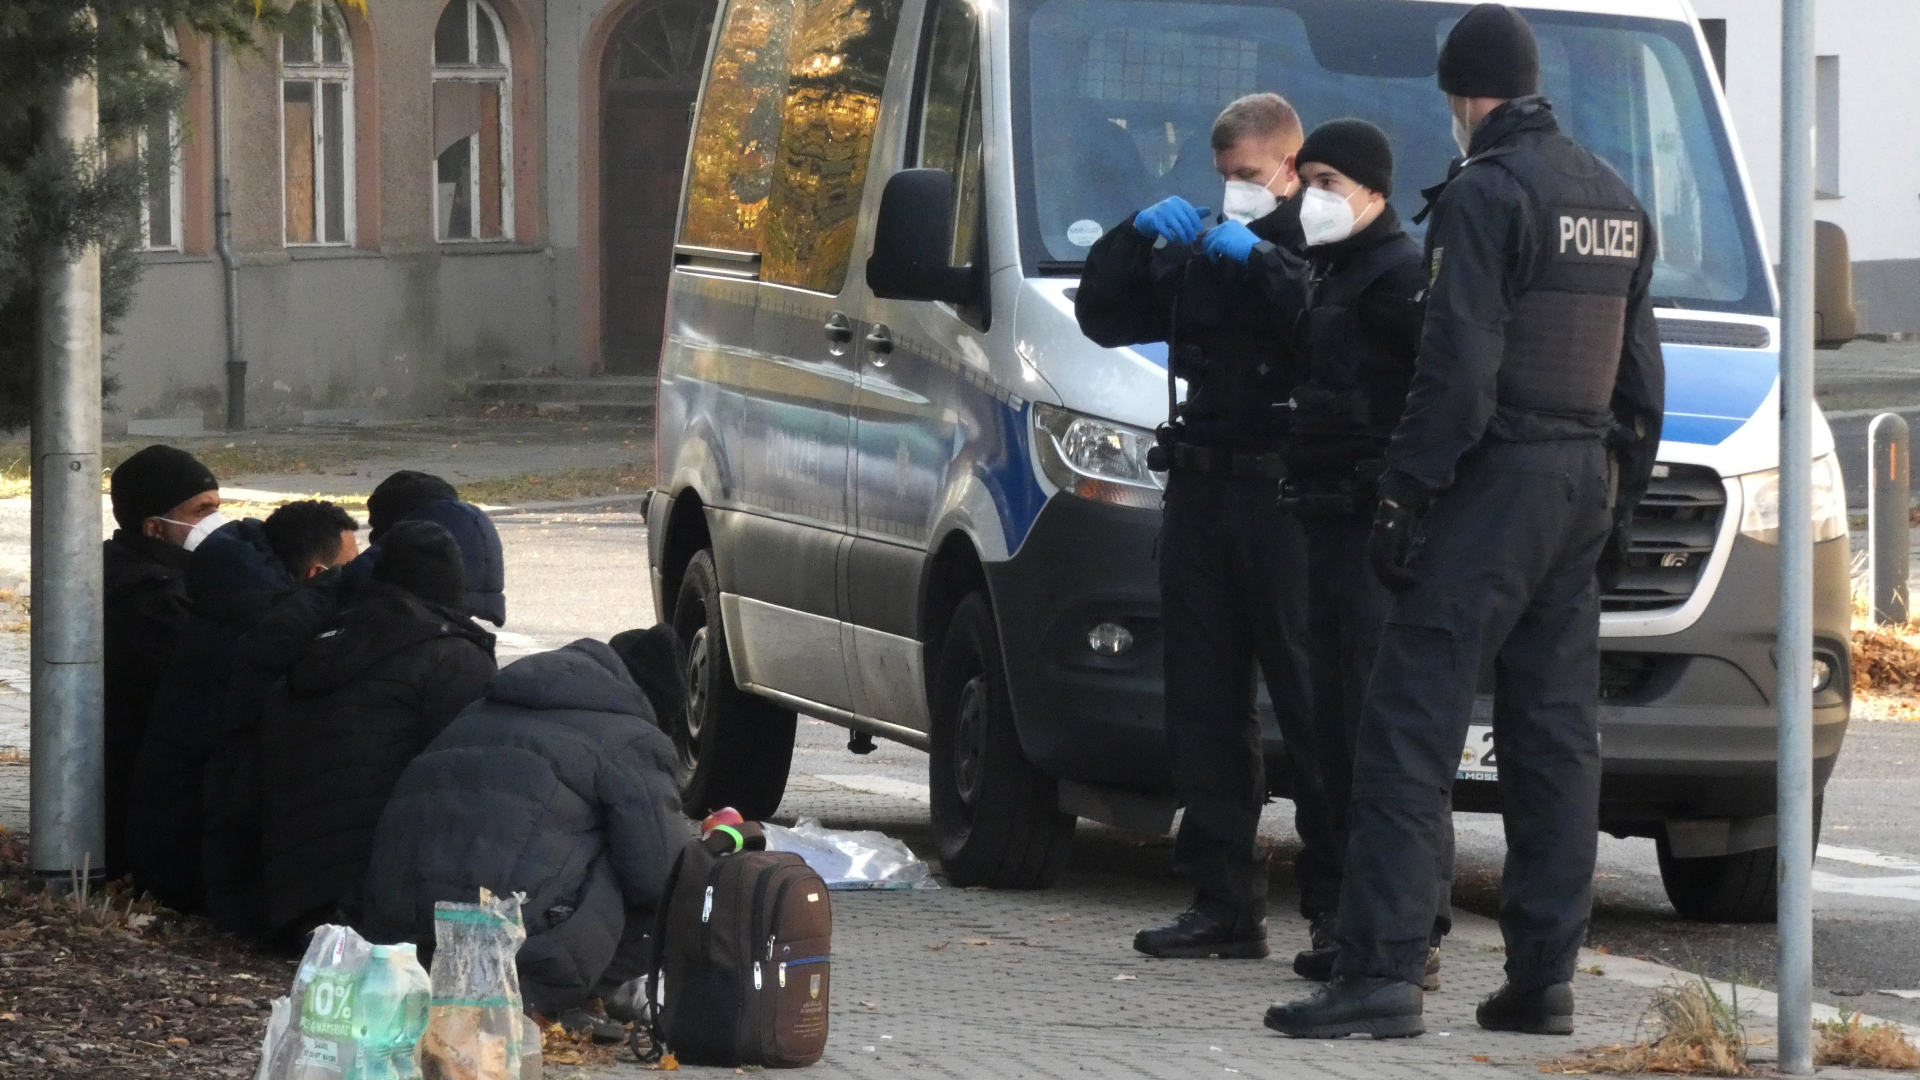 Bundespolizisten stehen an einem Polizeifahrzeug vor Geflüchteten in Guben, Brandenburg (Archivbild vom 24. Oktober 2021) | dpa